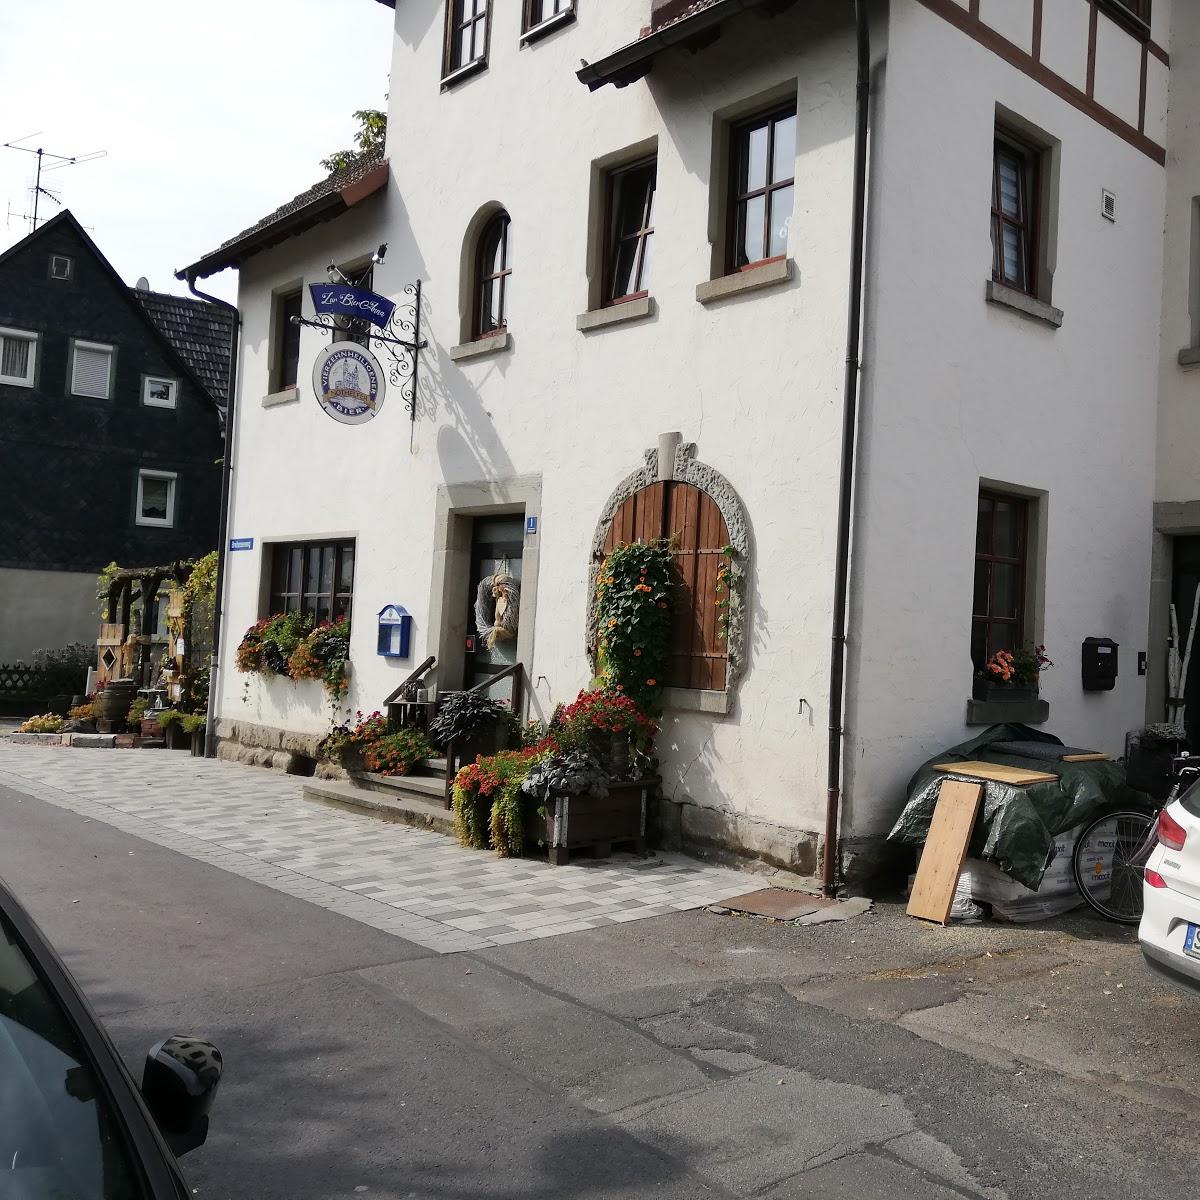 Restaurant "Gasthaus Lauterbach" in  Mitwitz